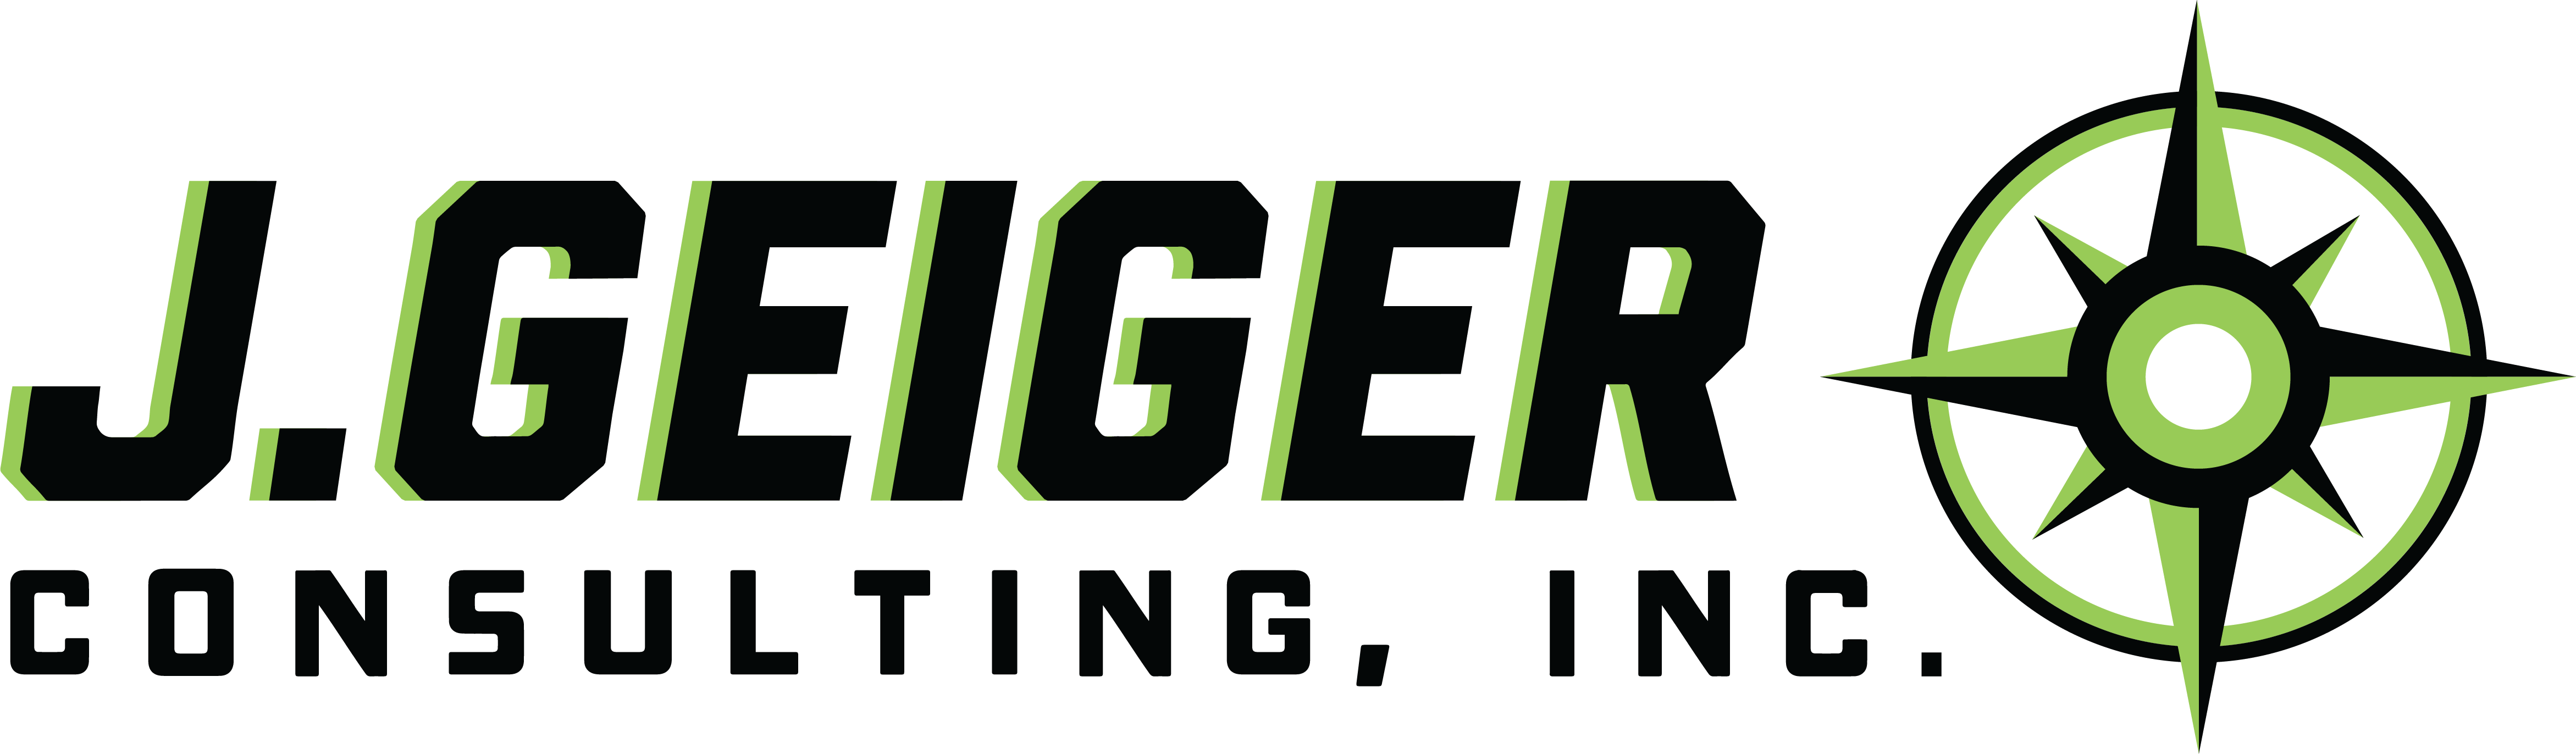 J.Geiger Consulting, Inc. Logo